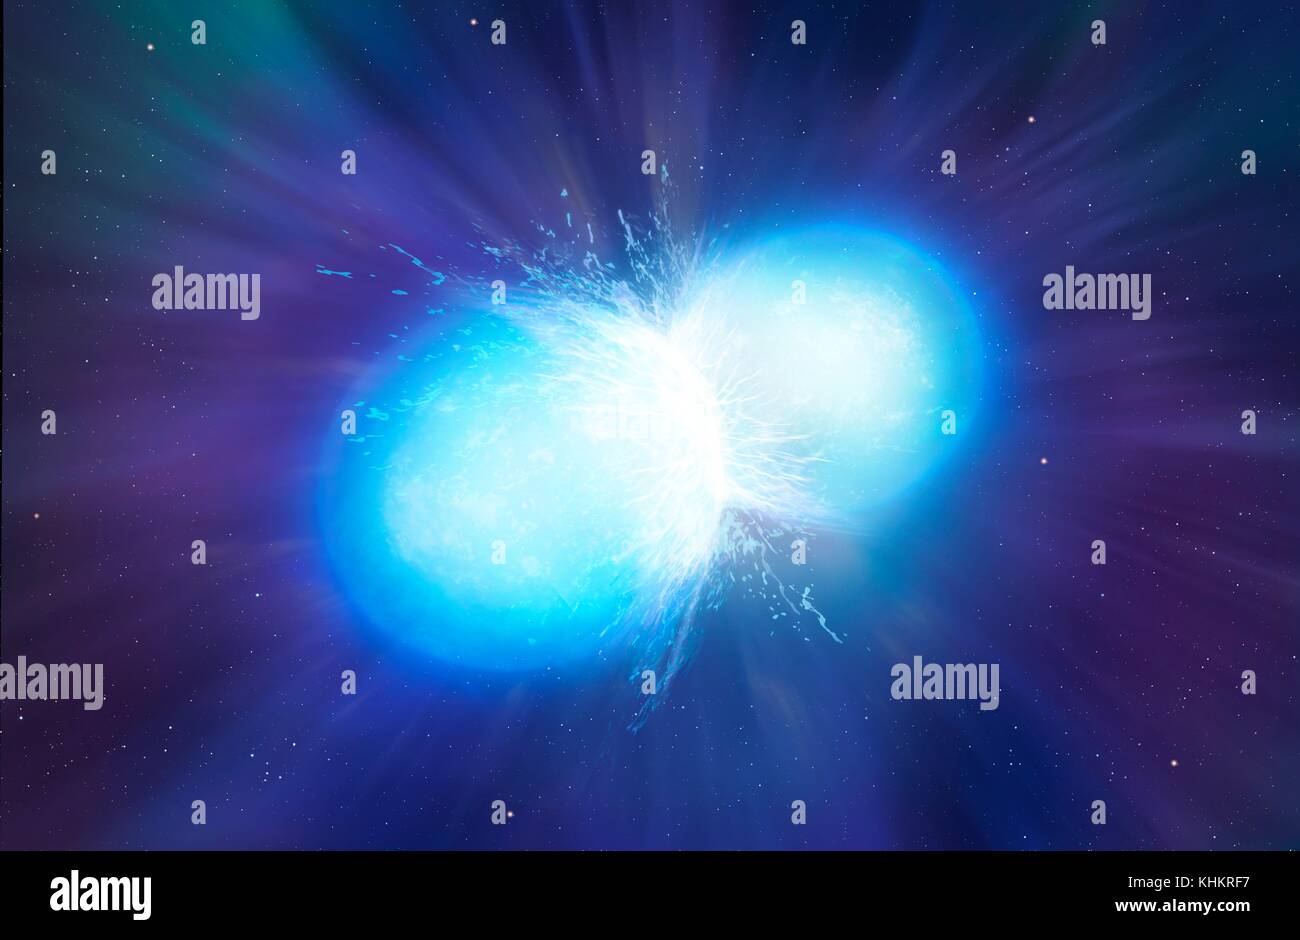 Neutronensterne, Illustration. Neutronensterne sind die Überreste von Sternen, die sich der Treibstoff ausgegangen und als Supernova explodiert, Schließlich kollabieren in eine superdense Kern. Eine typische Neutronenstern hat eine Masse von zwischen 1,3 und 2,1 Sonnenmassen, sondern Maßnahmen, die nur 10 km im Durchmesser. Neutronensterne existieren können als gekoppelt, oder Binär, Sterne. Hier ist die letzte Phase, kurz vor der Fusion. Dies führt zu einem heftigen Stoß der magnetischen Strahlung bleibende Millisekunden. Es wird angeregt, dies ist die Quelle der Kurze Gammablitze. Stockfoto